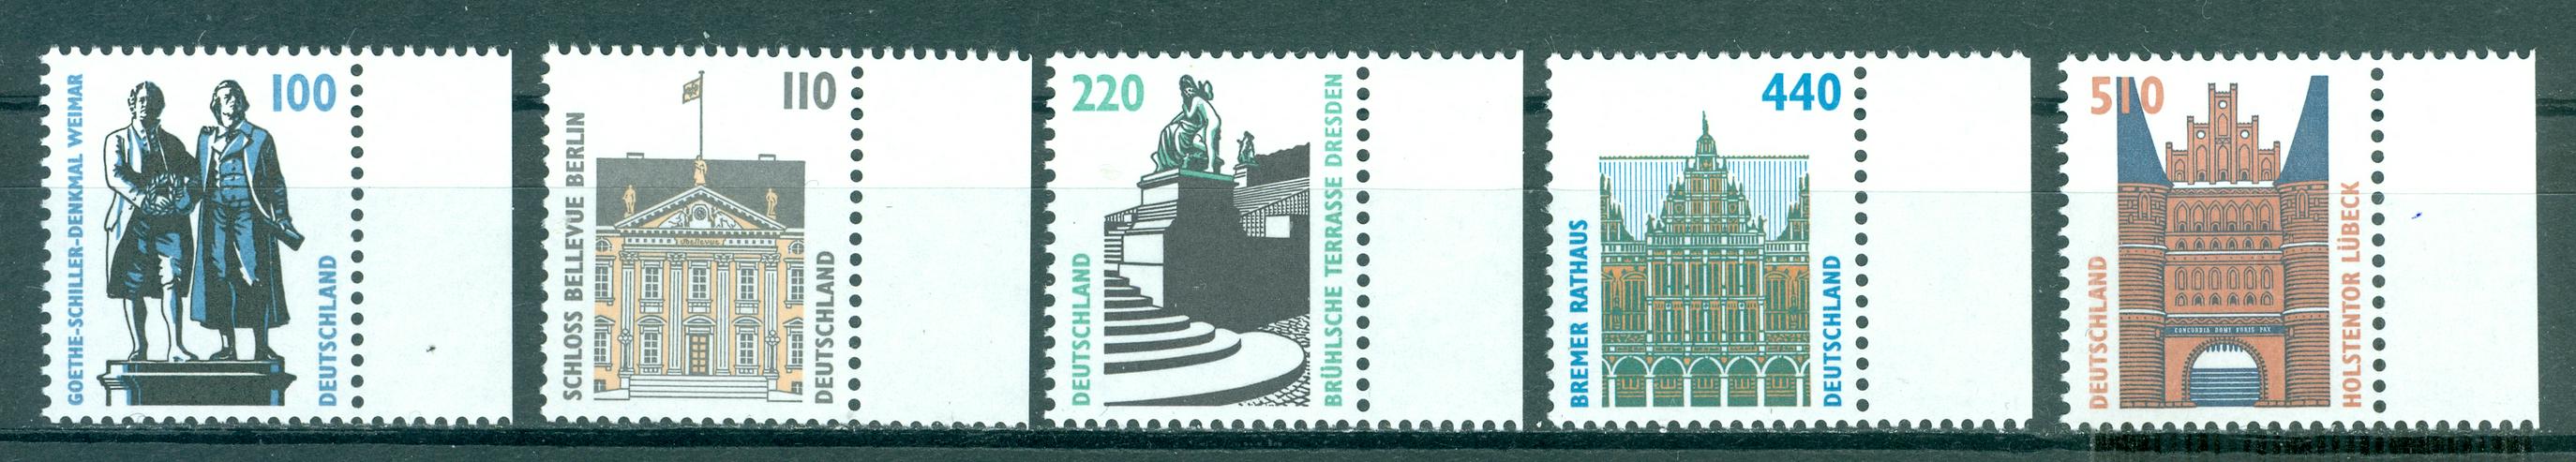 Bund postfrisch Nr. 1934-1938 mit Rand, wie auf dem Bild zu sehen, ohne Falz